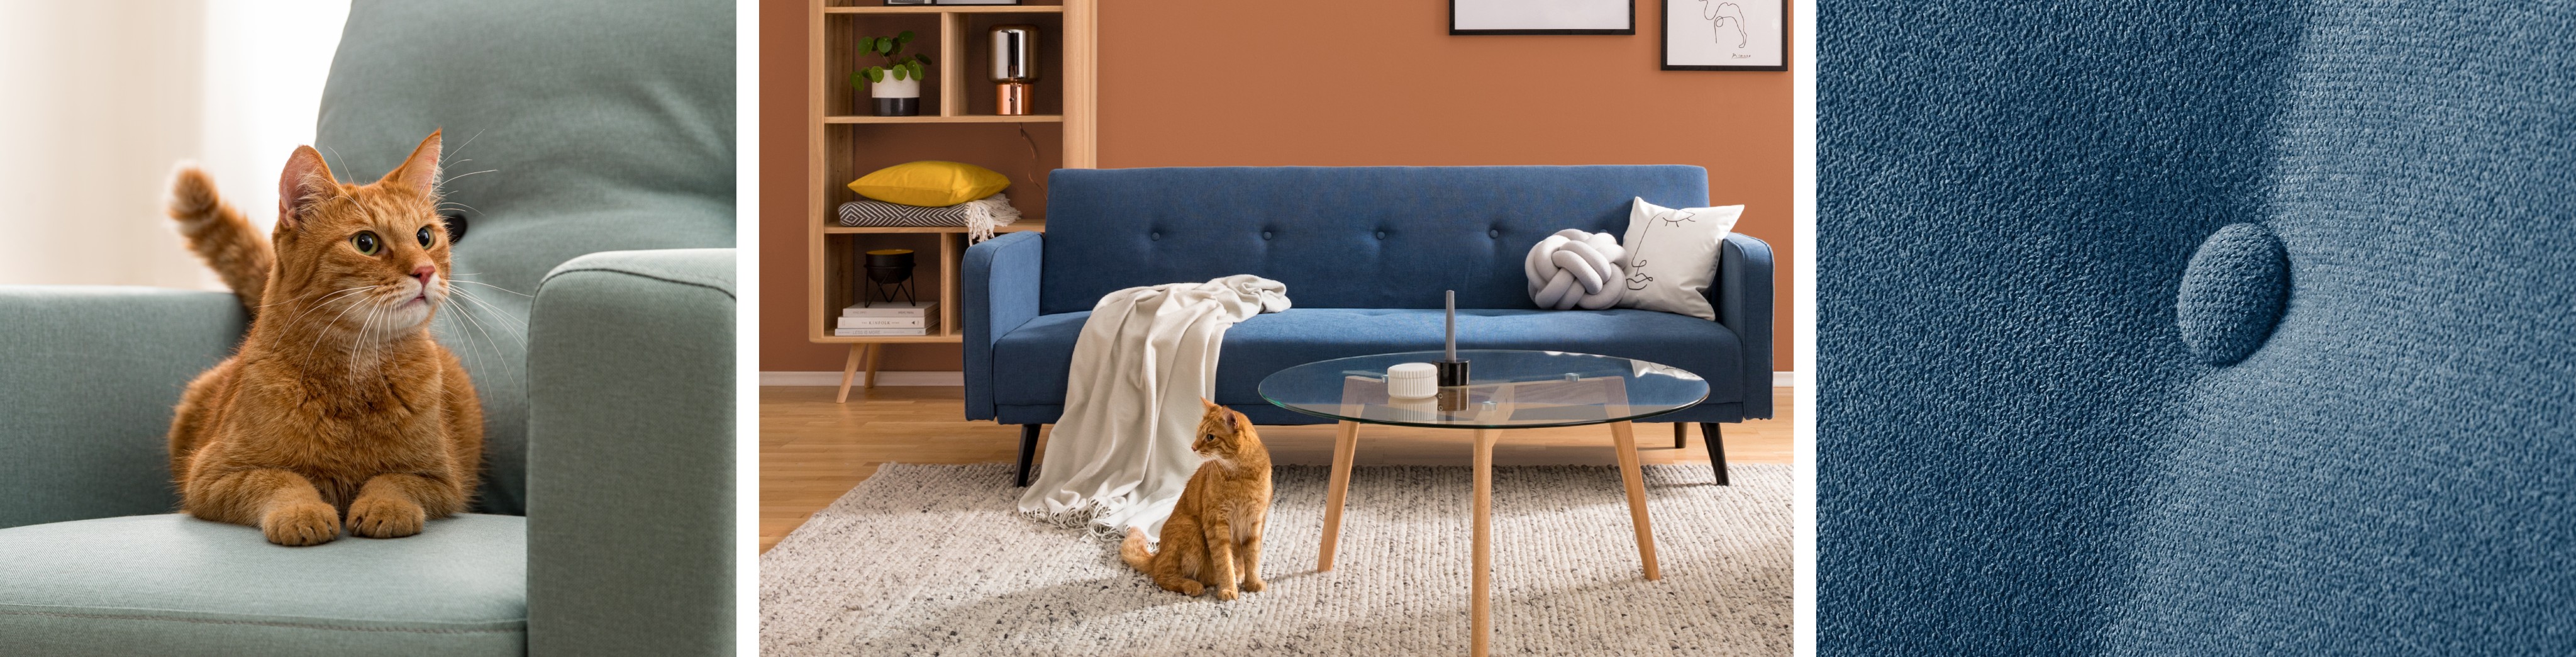 Katze auf Stoffsofa und Katze vor blauem Sofa aus Microfaser